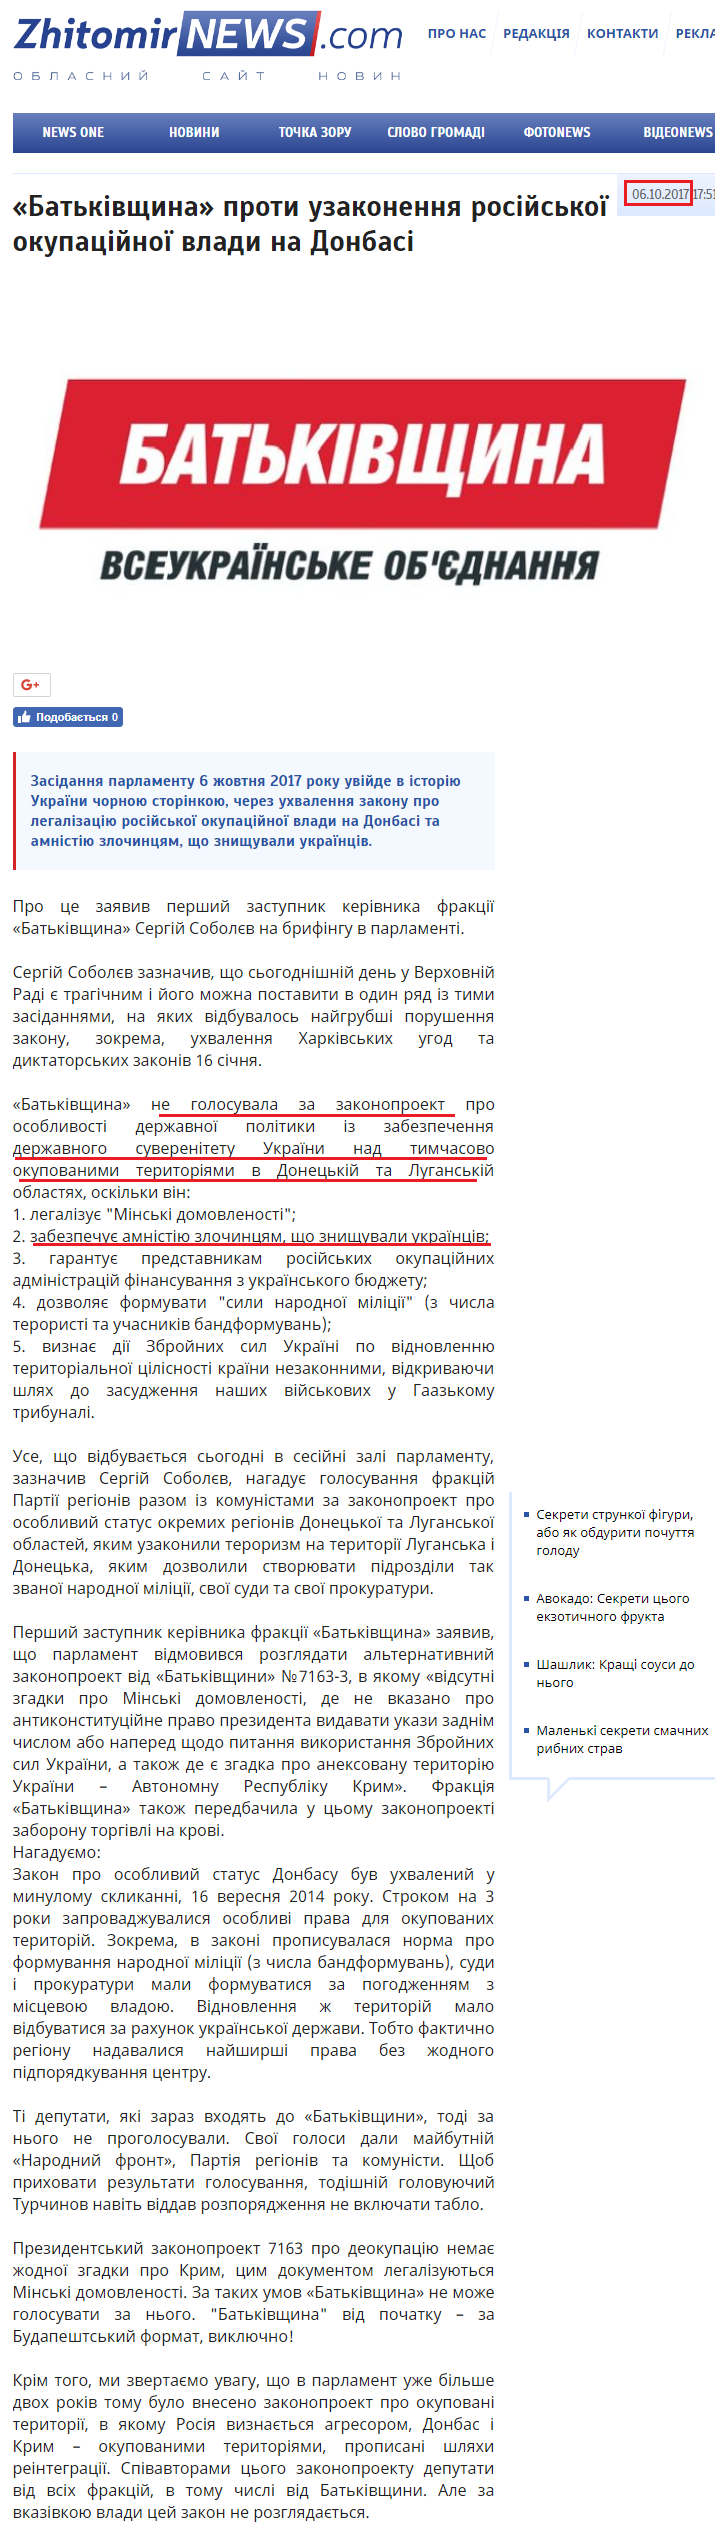 http://www.zhitomirnews.com/noviniukrayini/batkivsina-proti-uzakonenna-rosijskoi-okupacijnoi-vladi-na-donbasi-